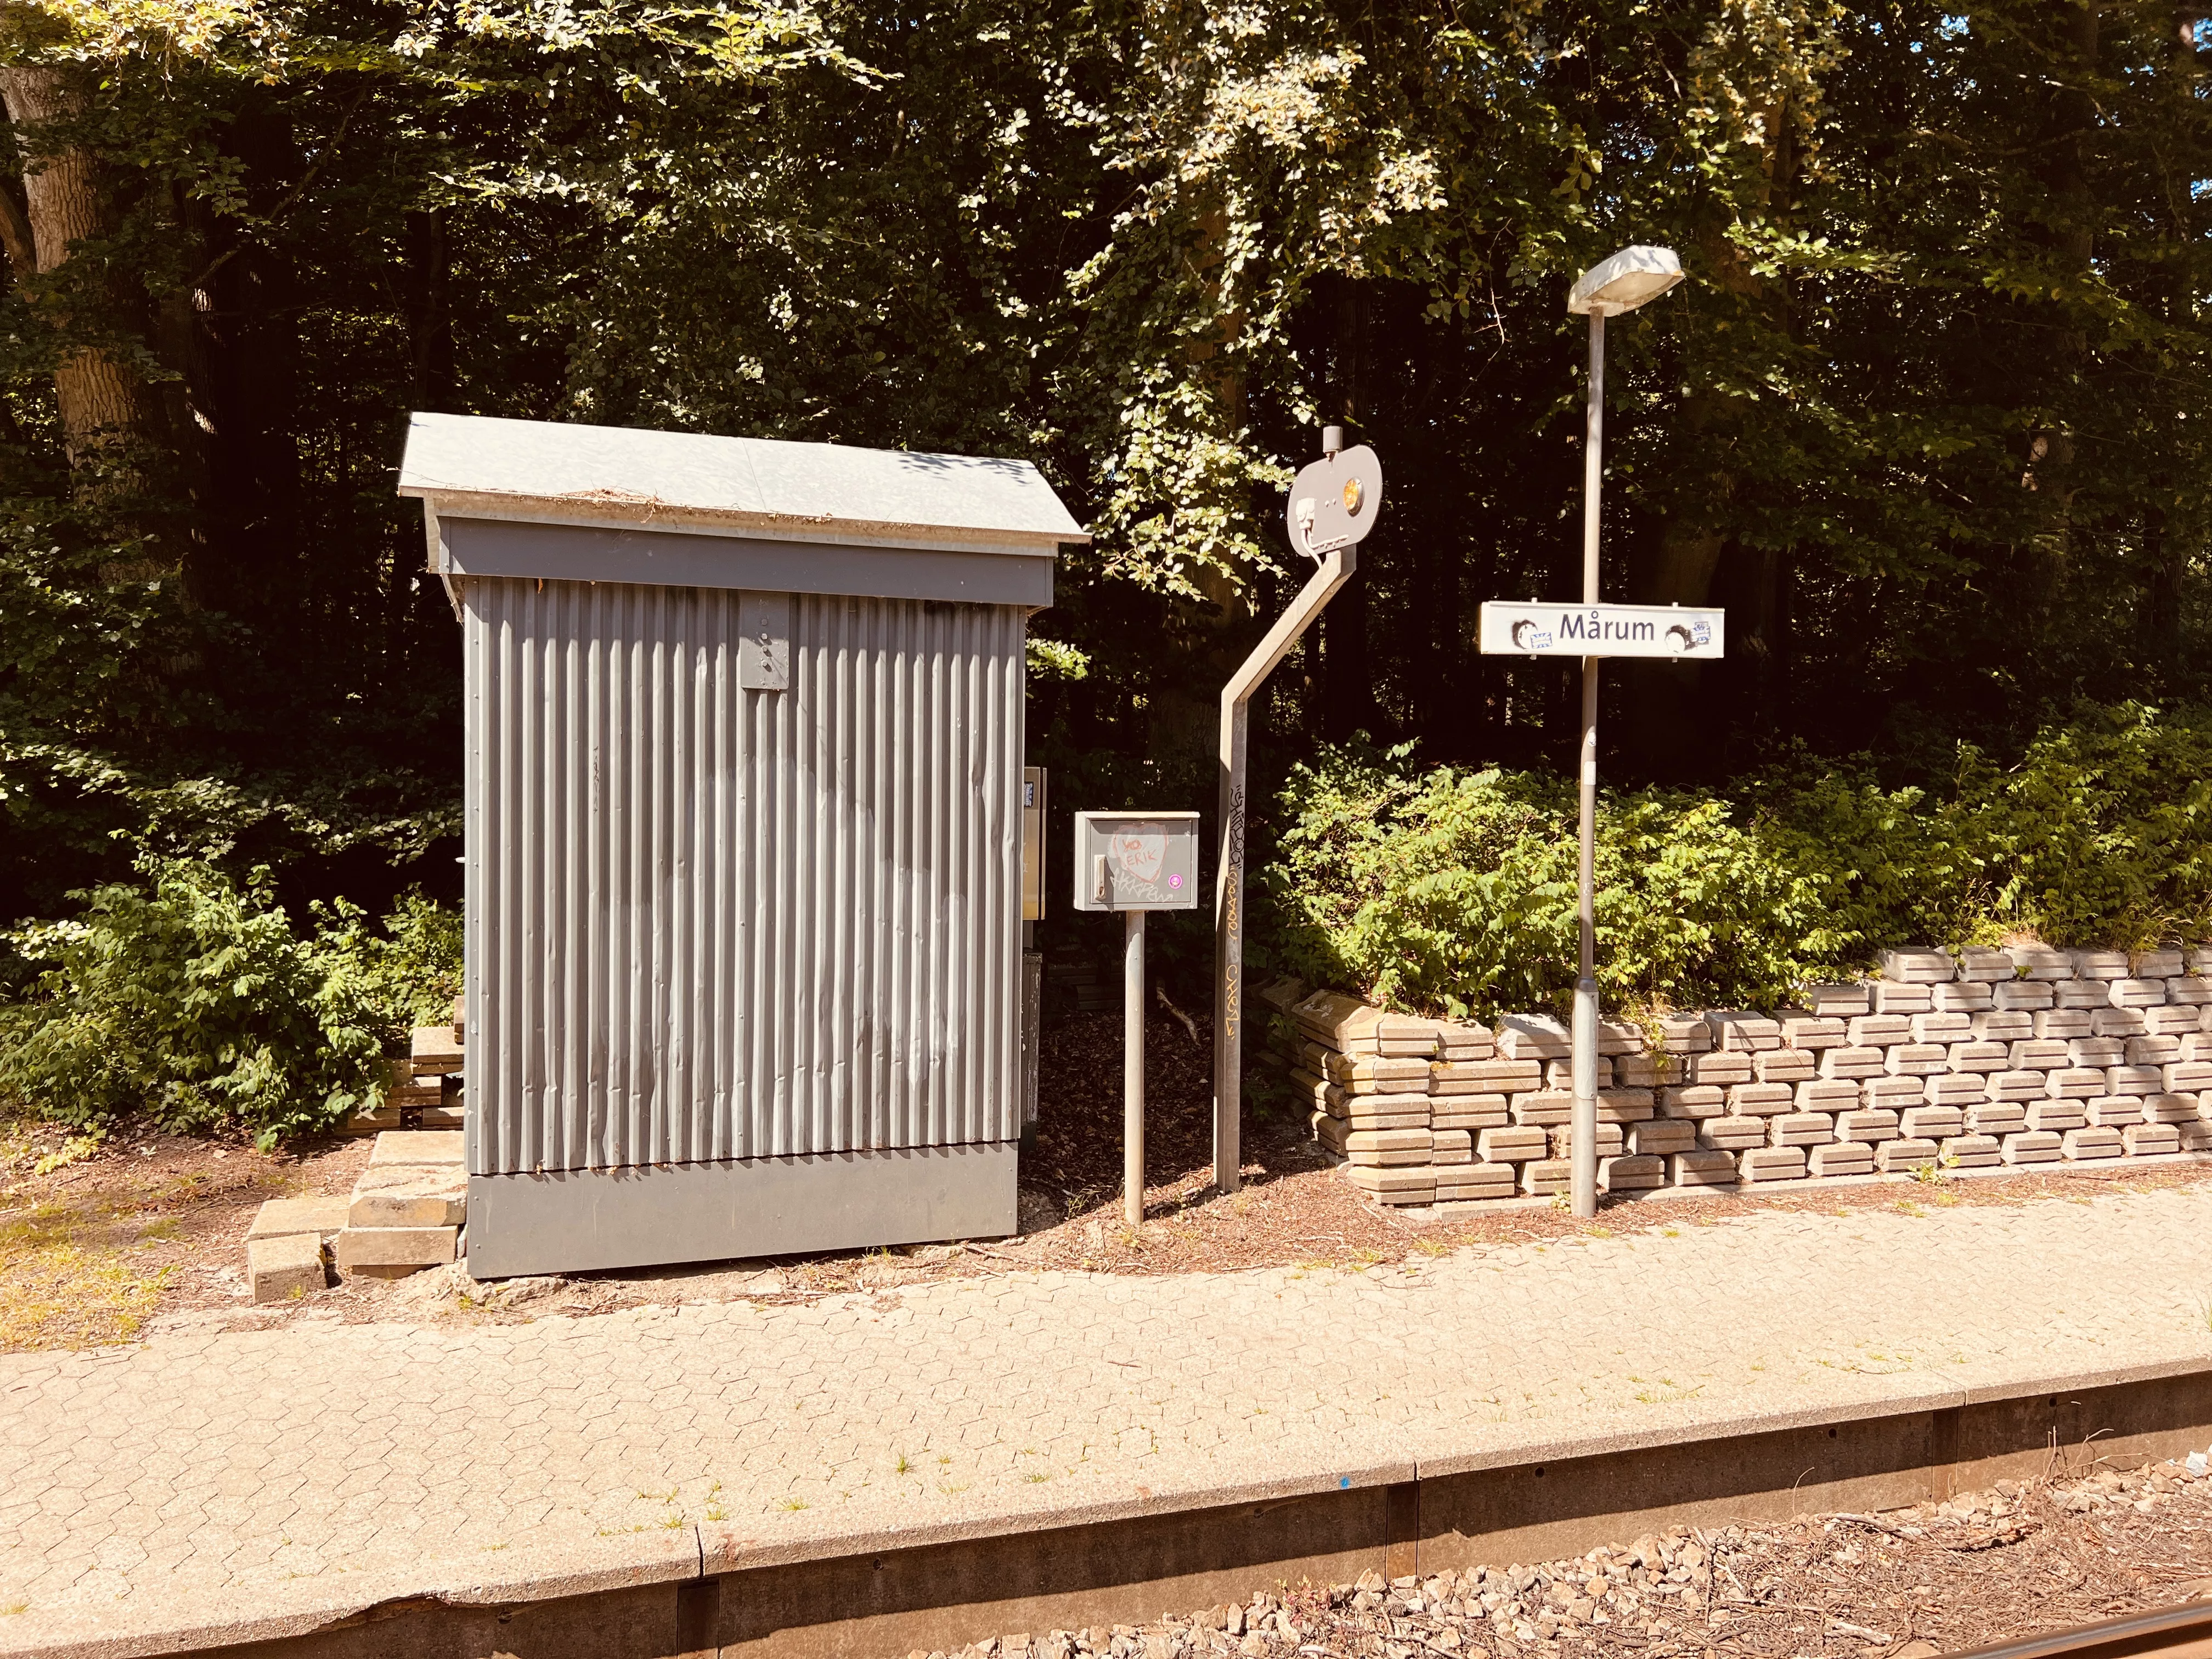 Billede af Mårum Station.